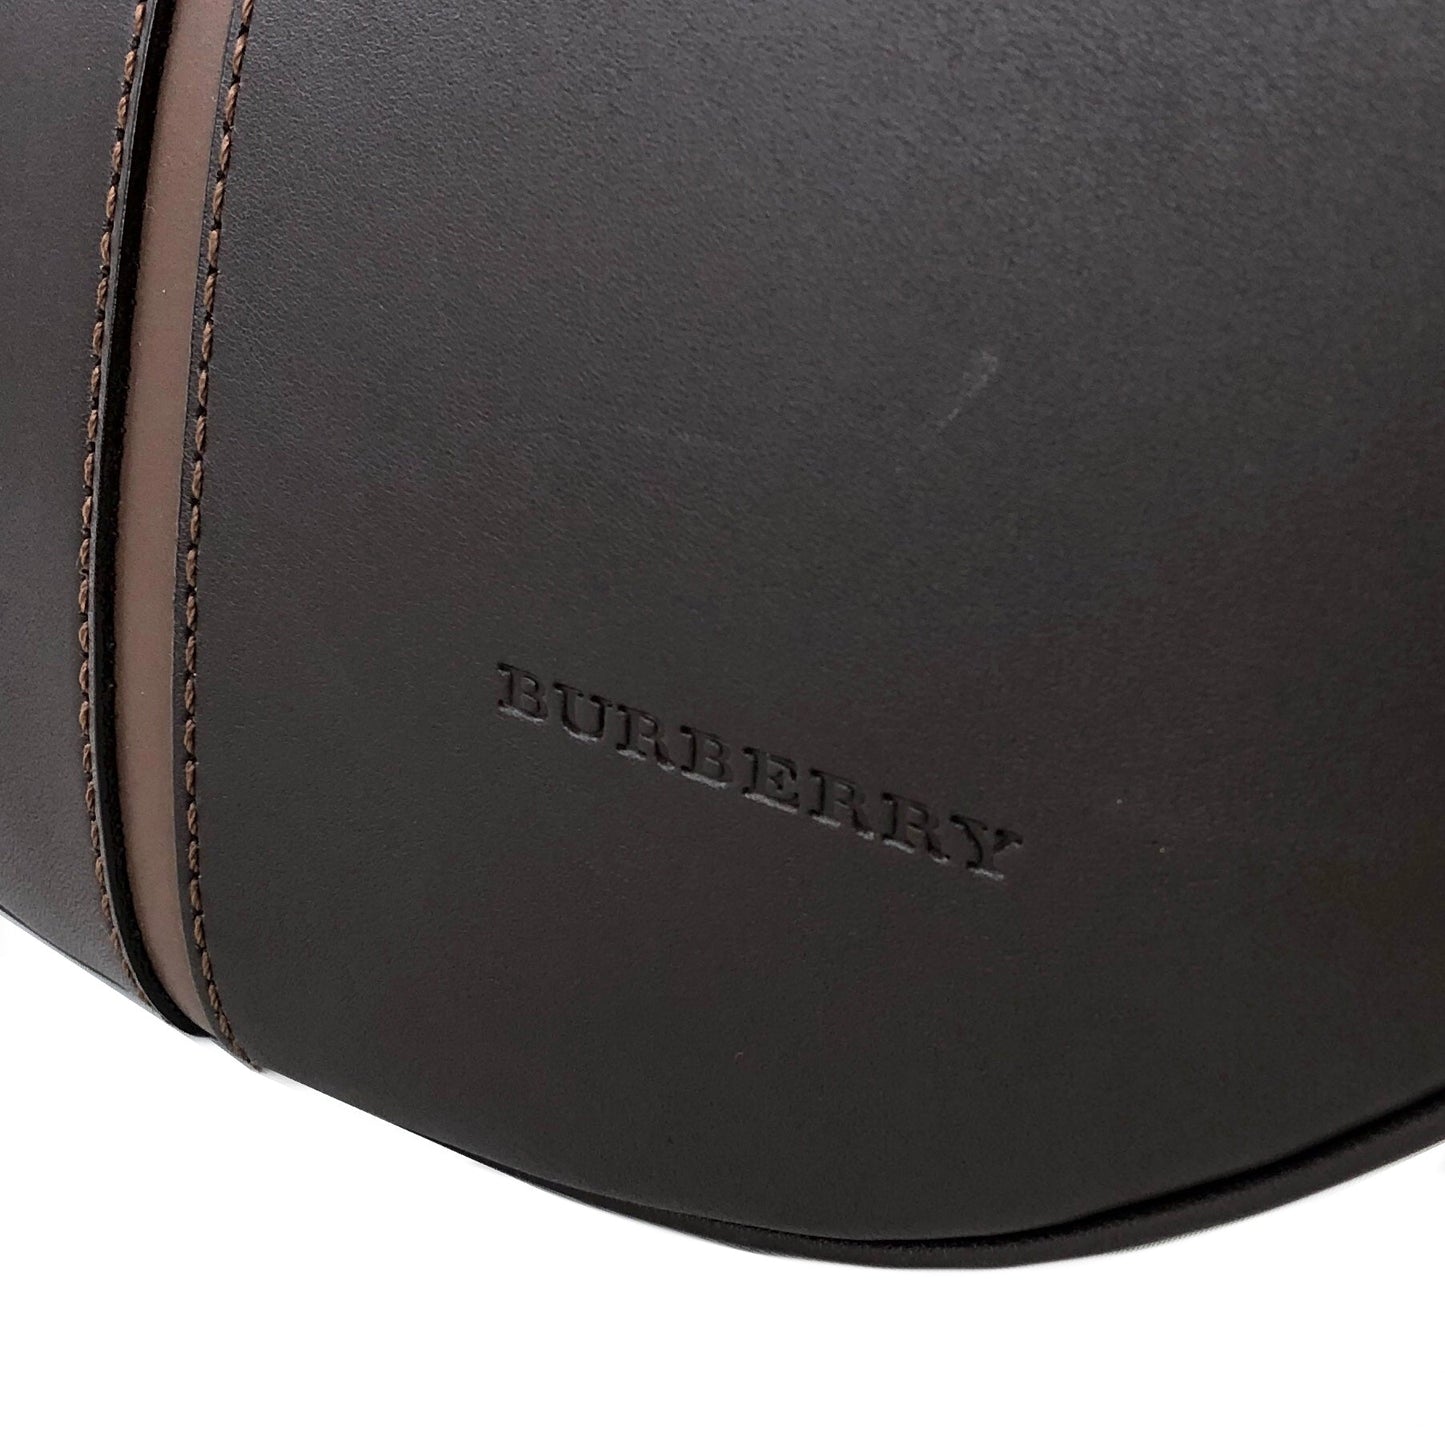 Burberrys Leather Hobo bag Shoulder bag Brown Vintage Old kuvk5s